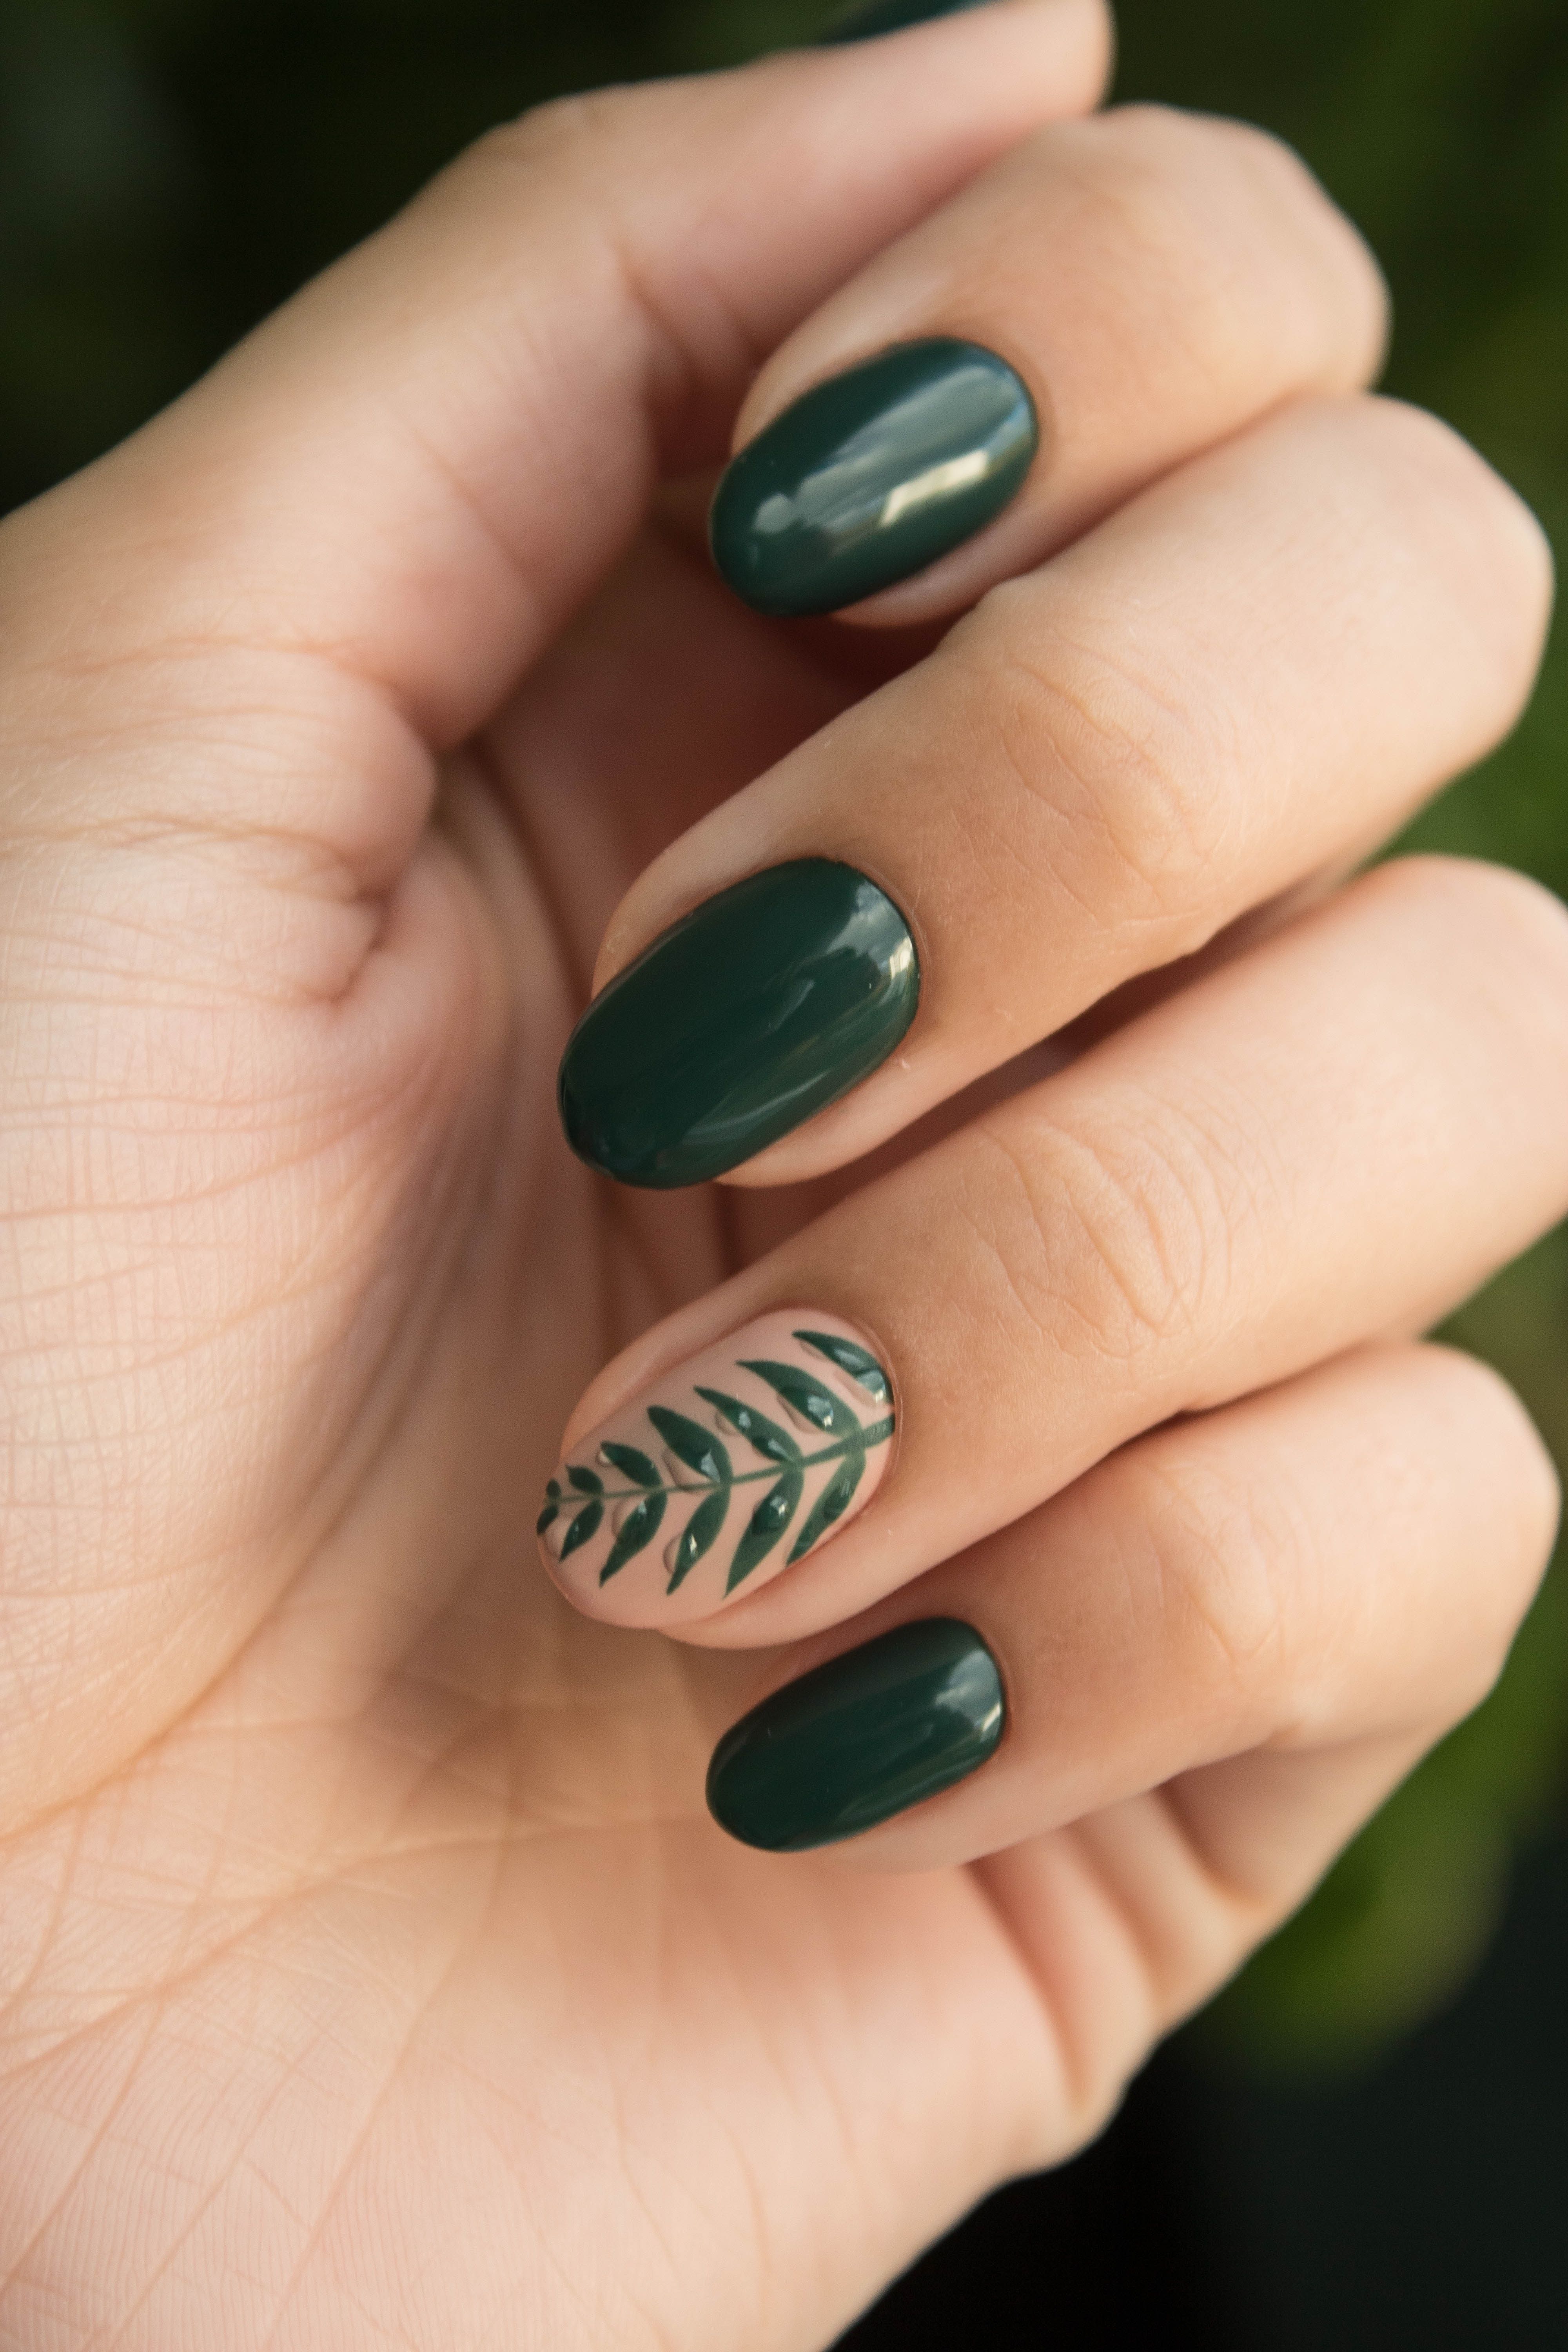 Green Manicure Art Close Up Photo · Free